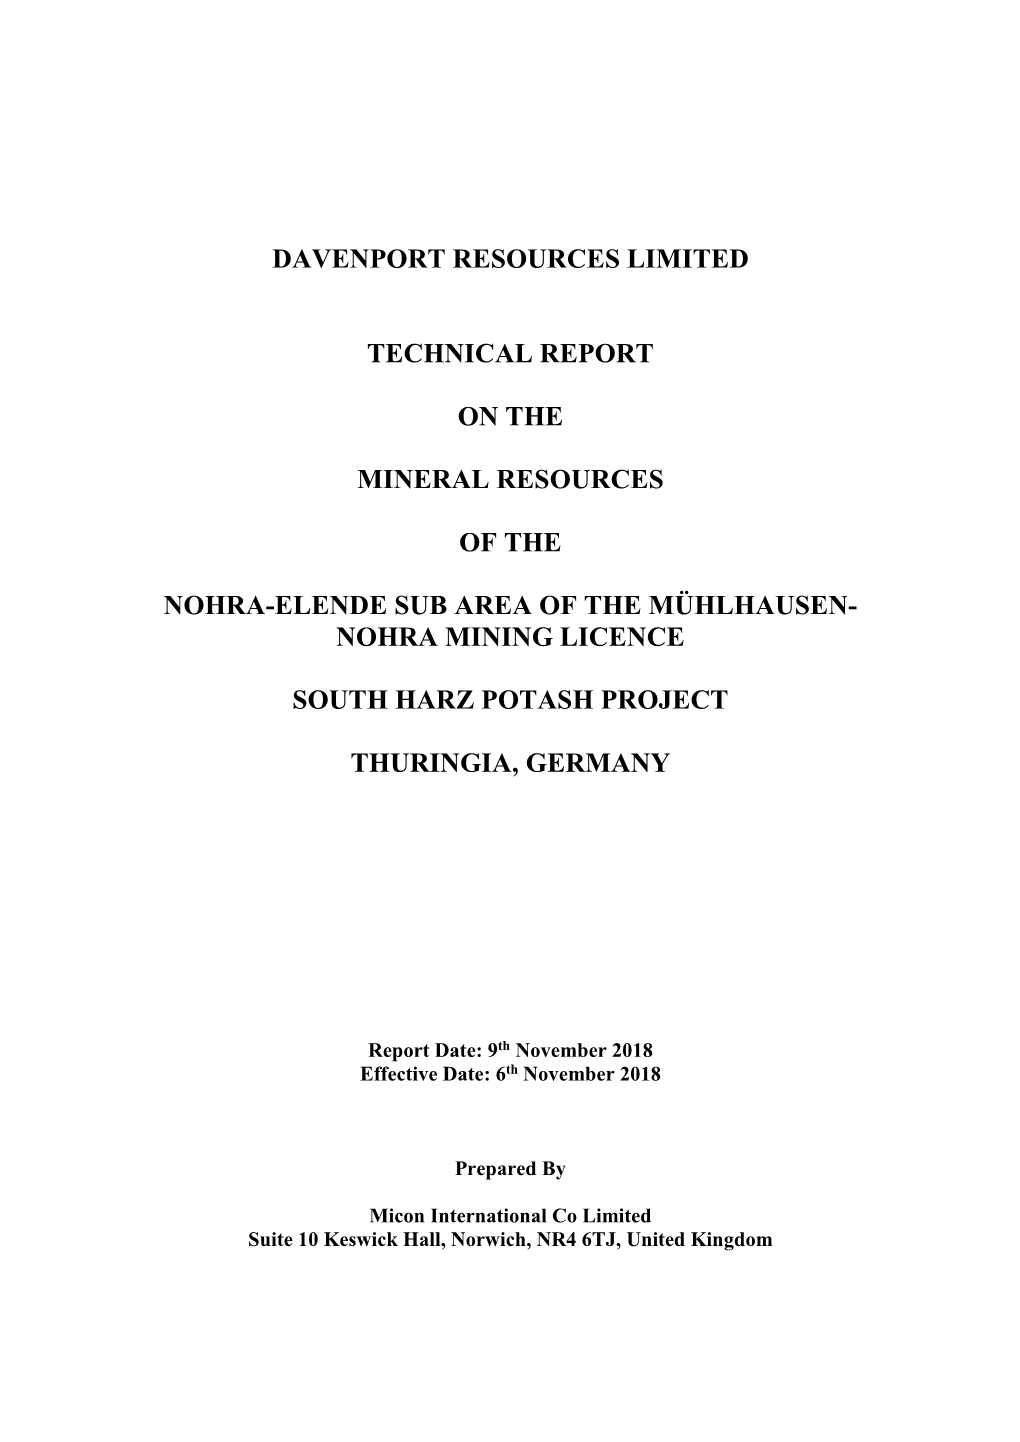 Nohra-Elende Research Report